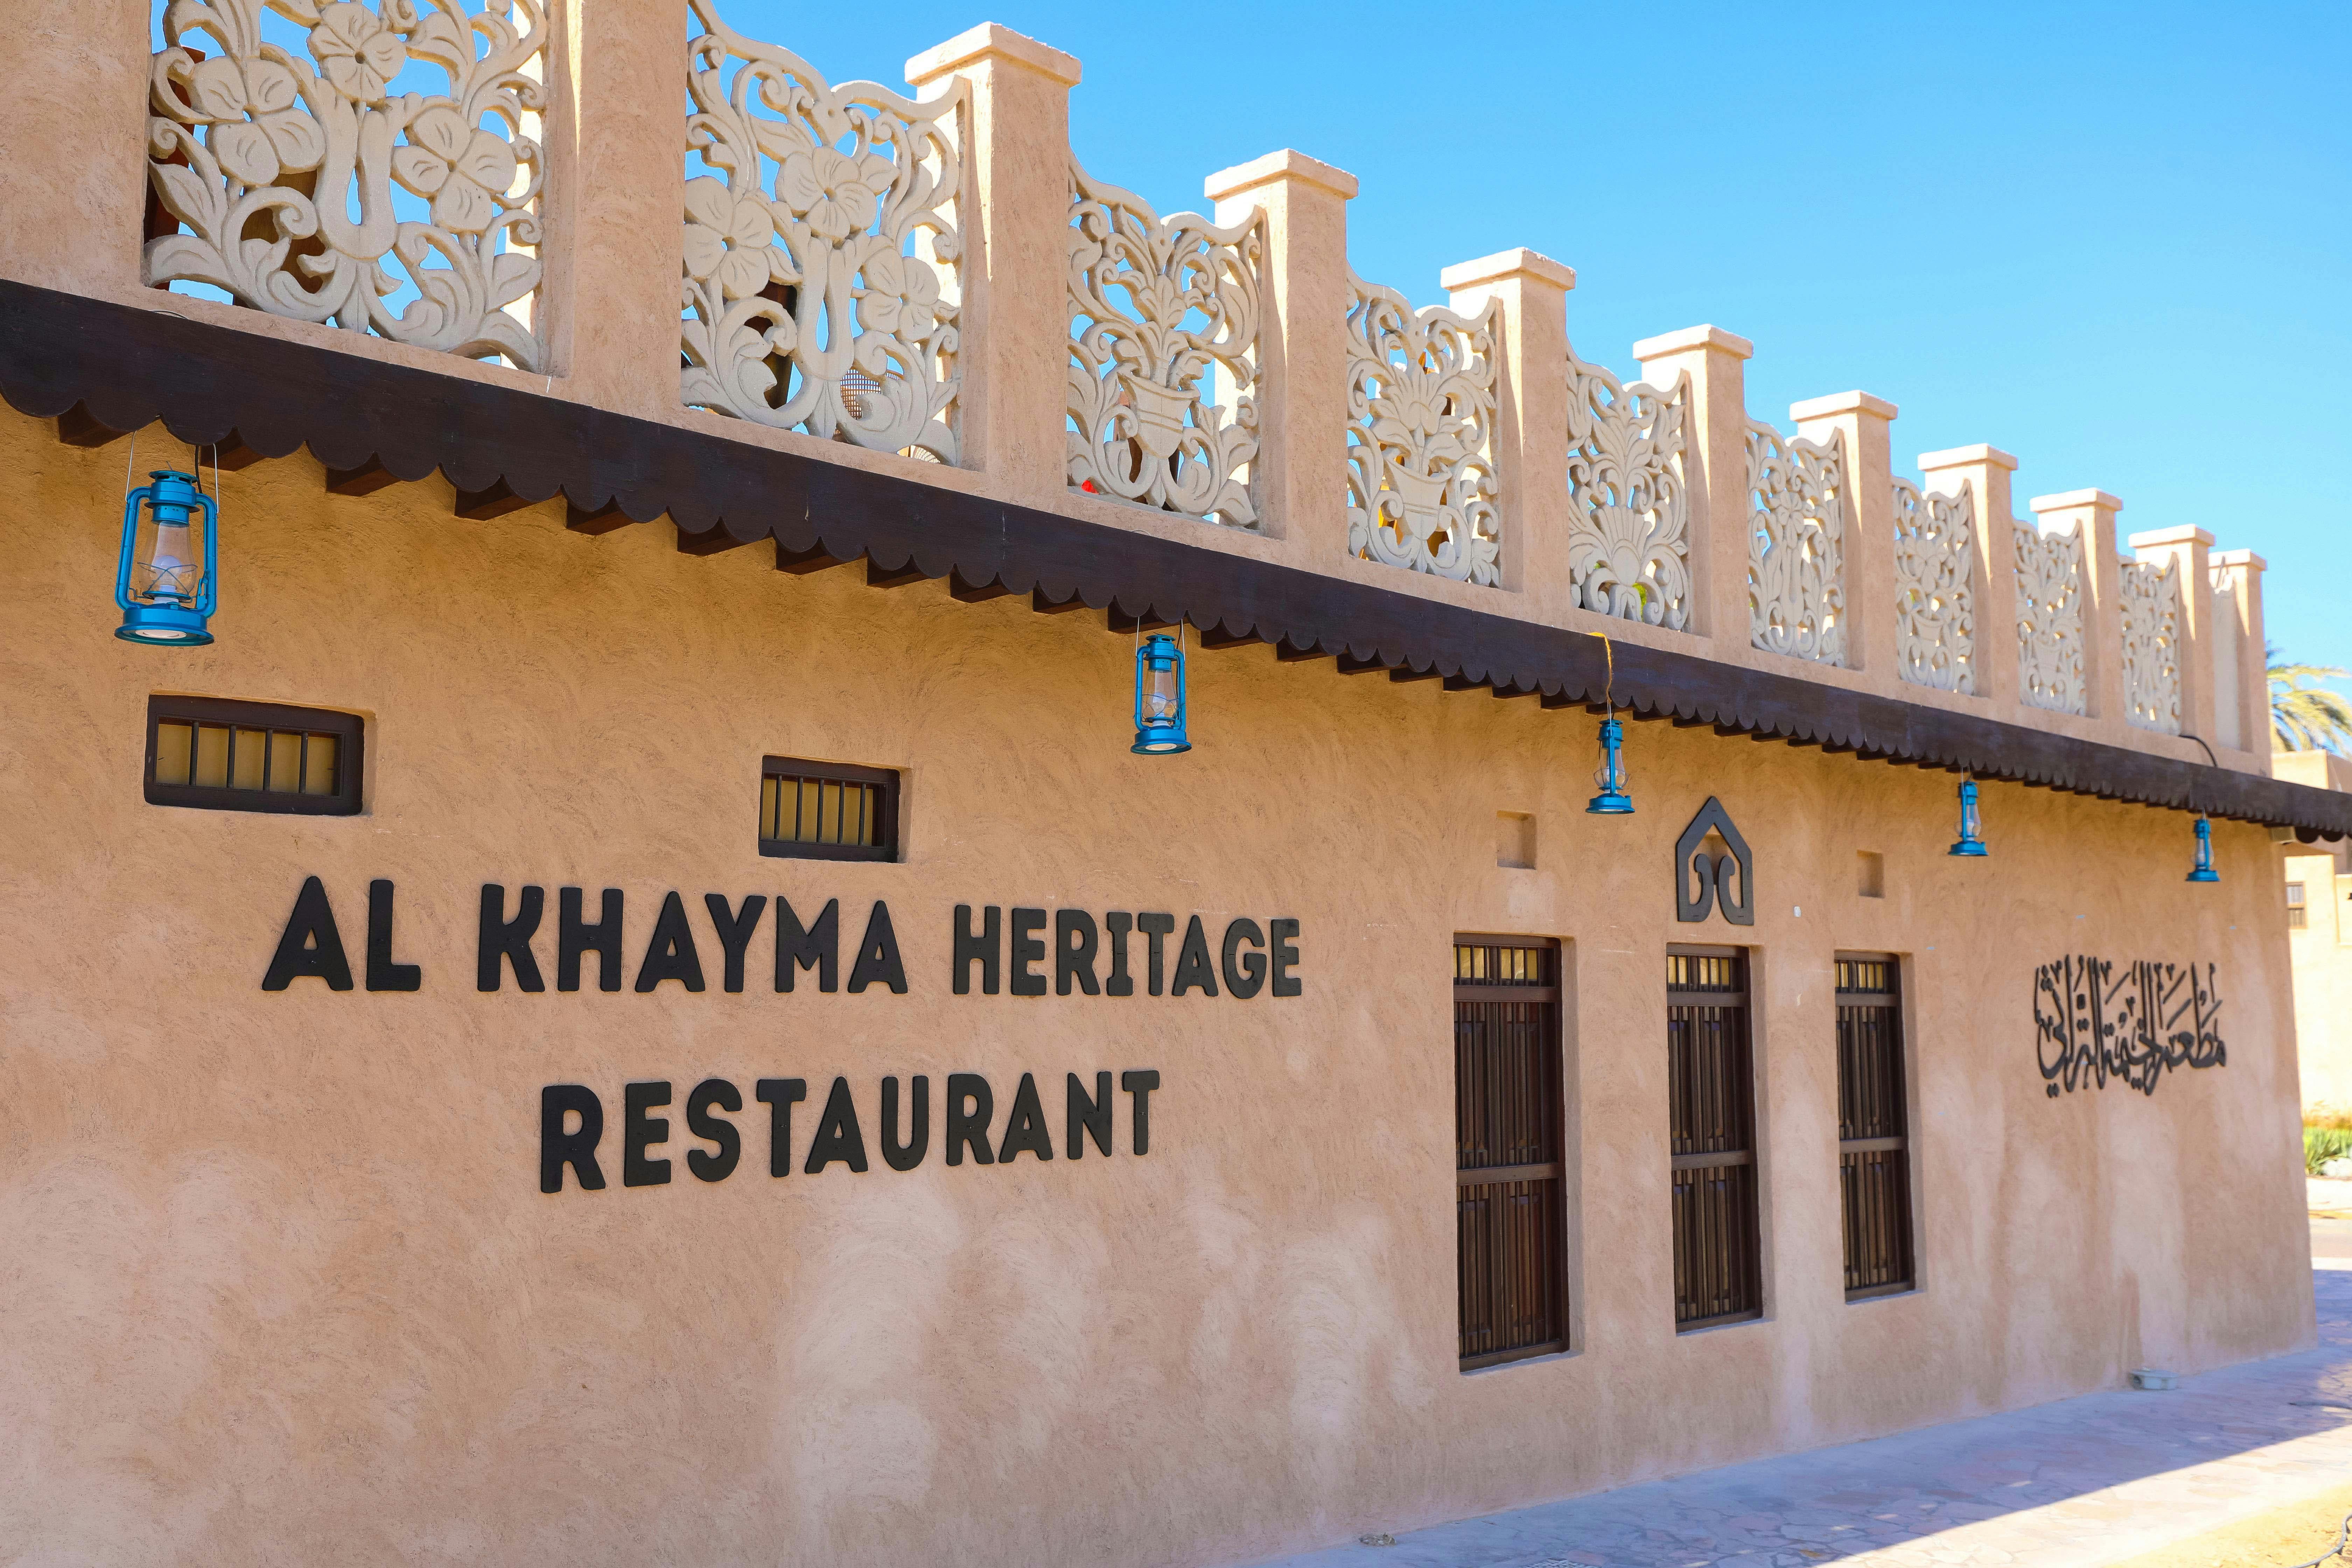 Cuisine ethnique émiratie à la maison du patrimoine Al Khayma